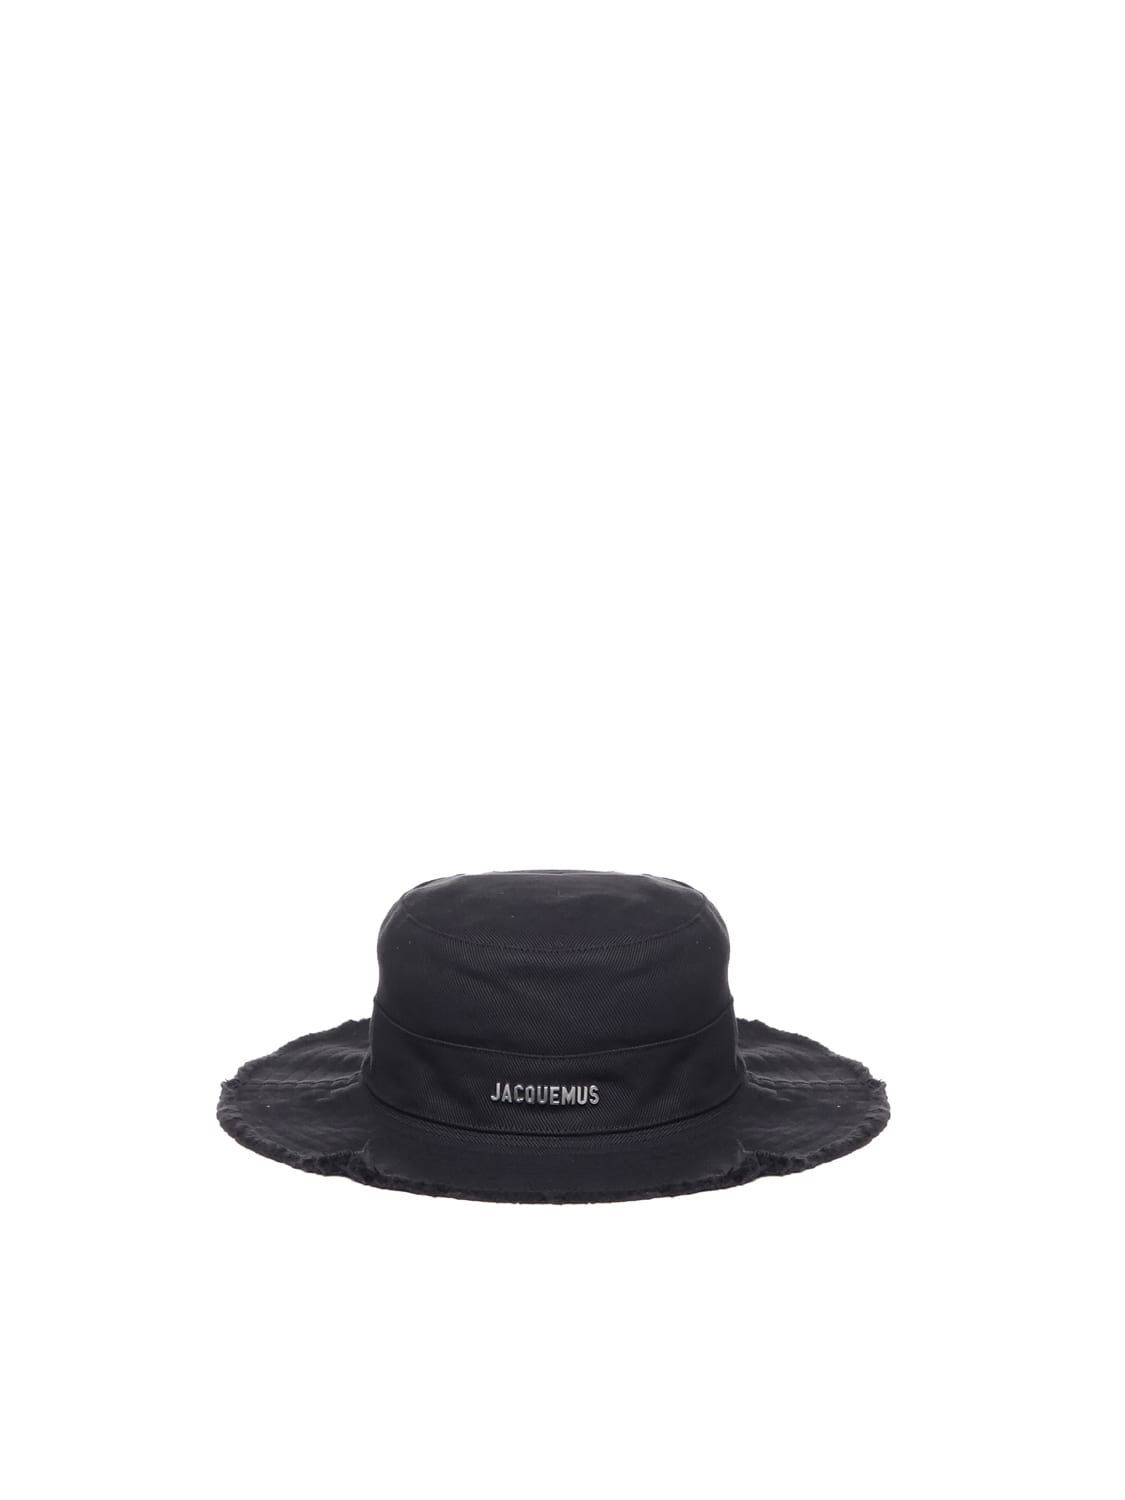 Jacquemus Le Bob Artichaut Hat In Black